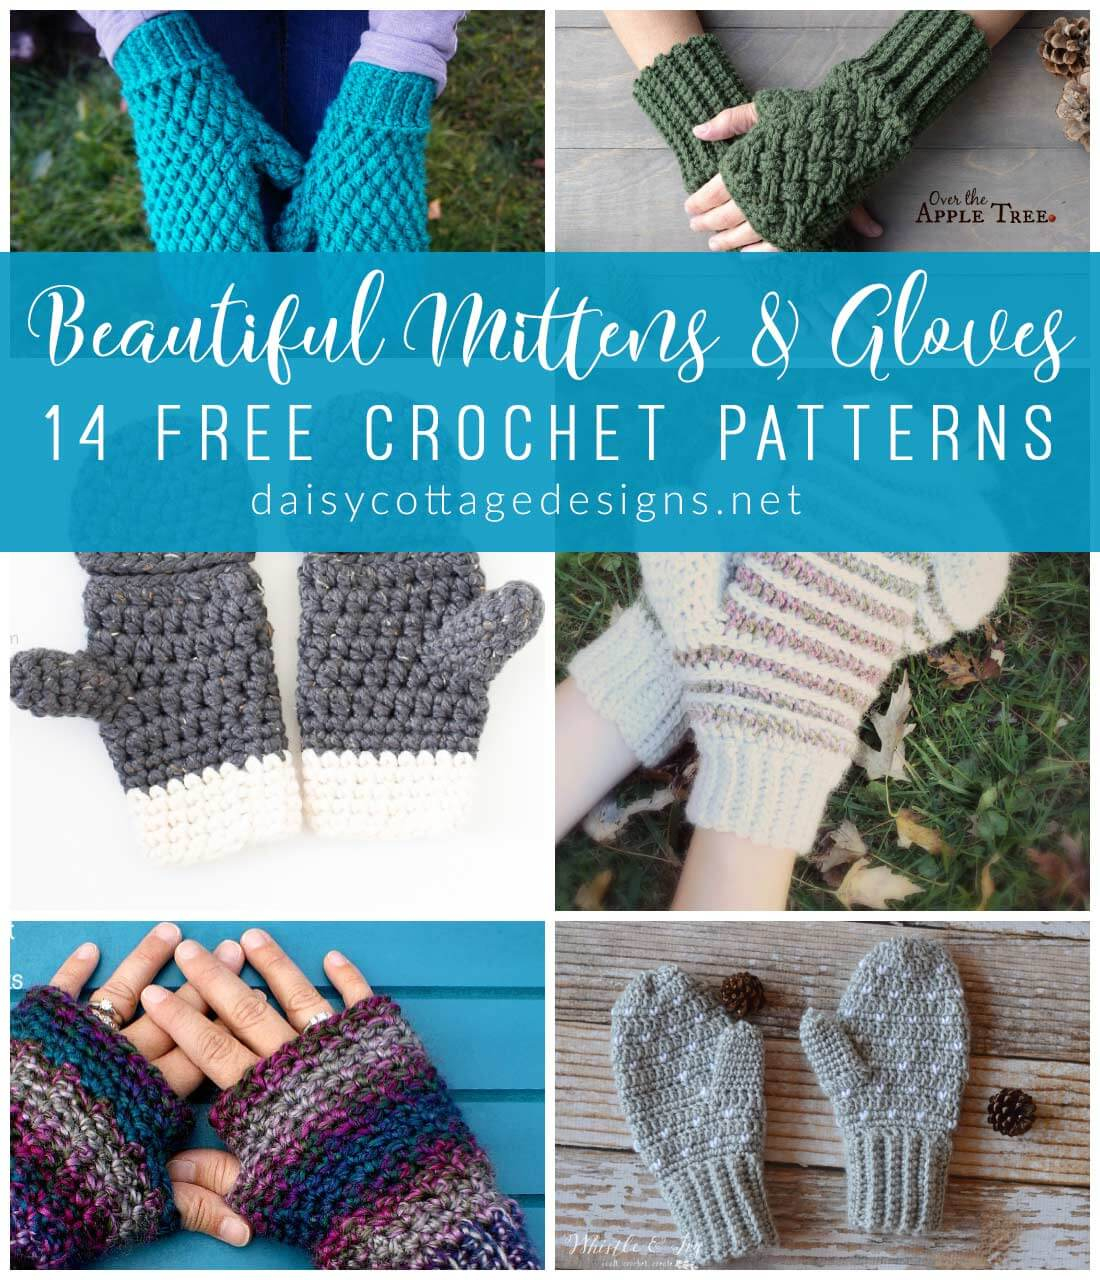 Crochet Wrist Warmers Free Pattern Crochet Fingerless Gloves Mitten Crochet Patterns Daisy Cottage